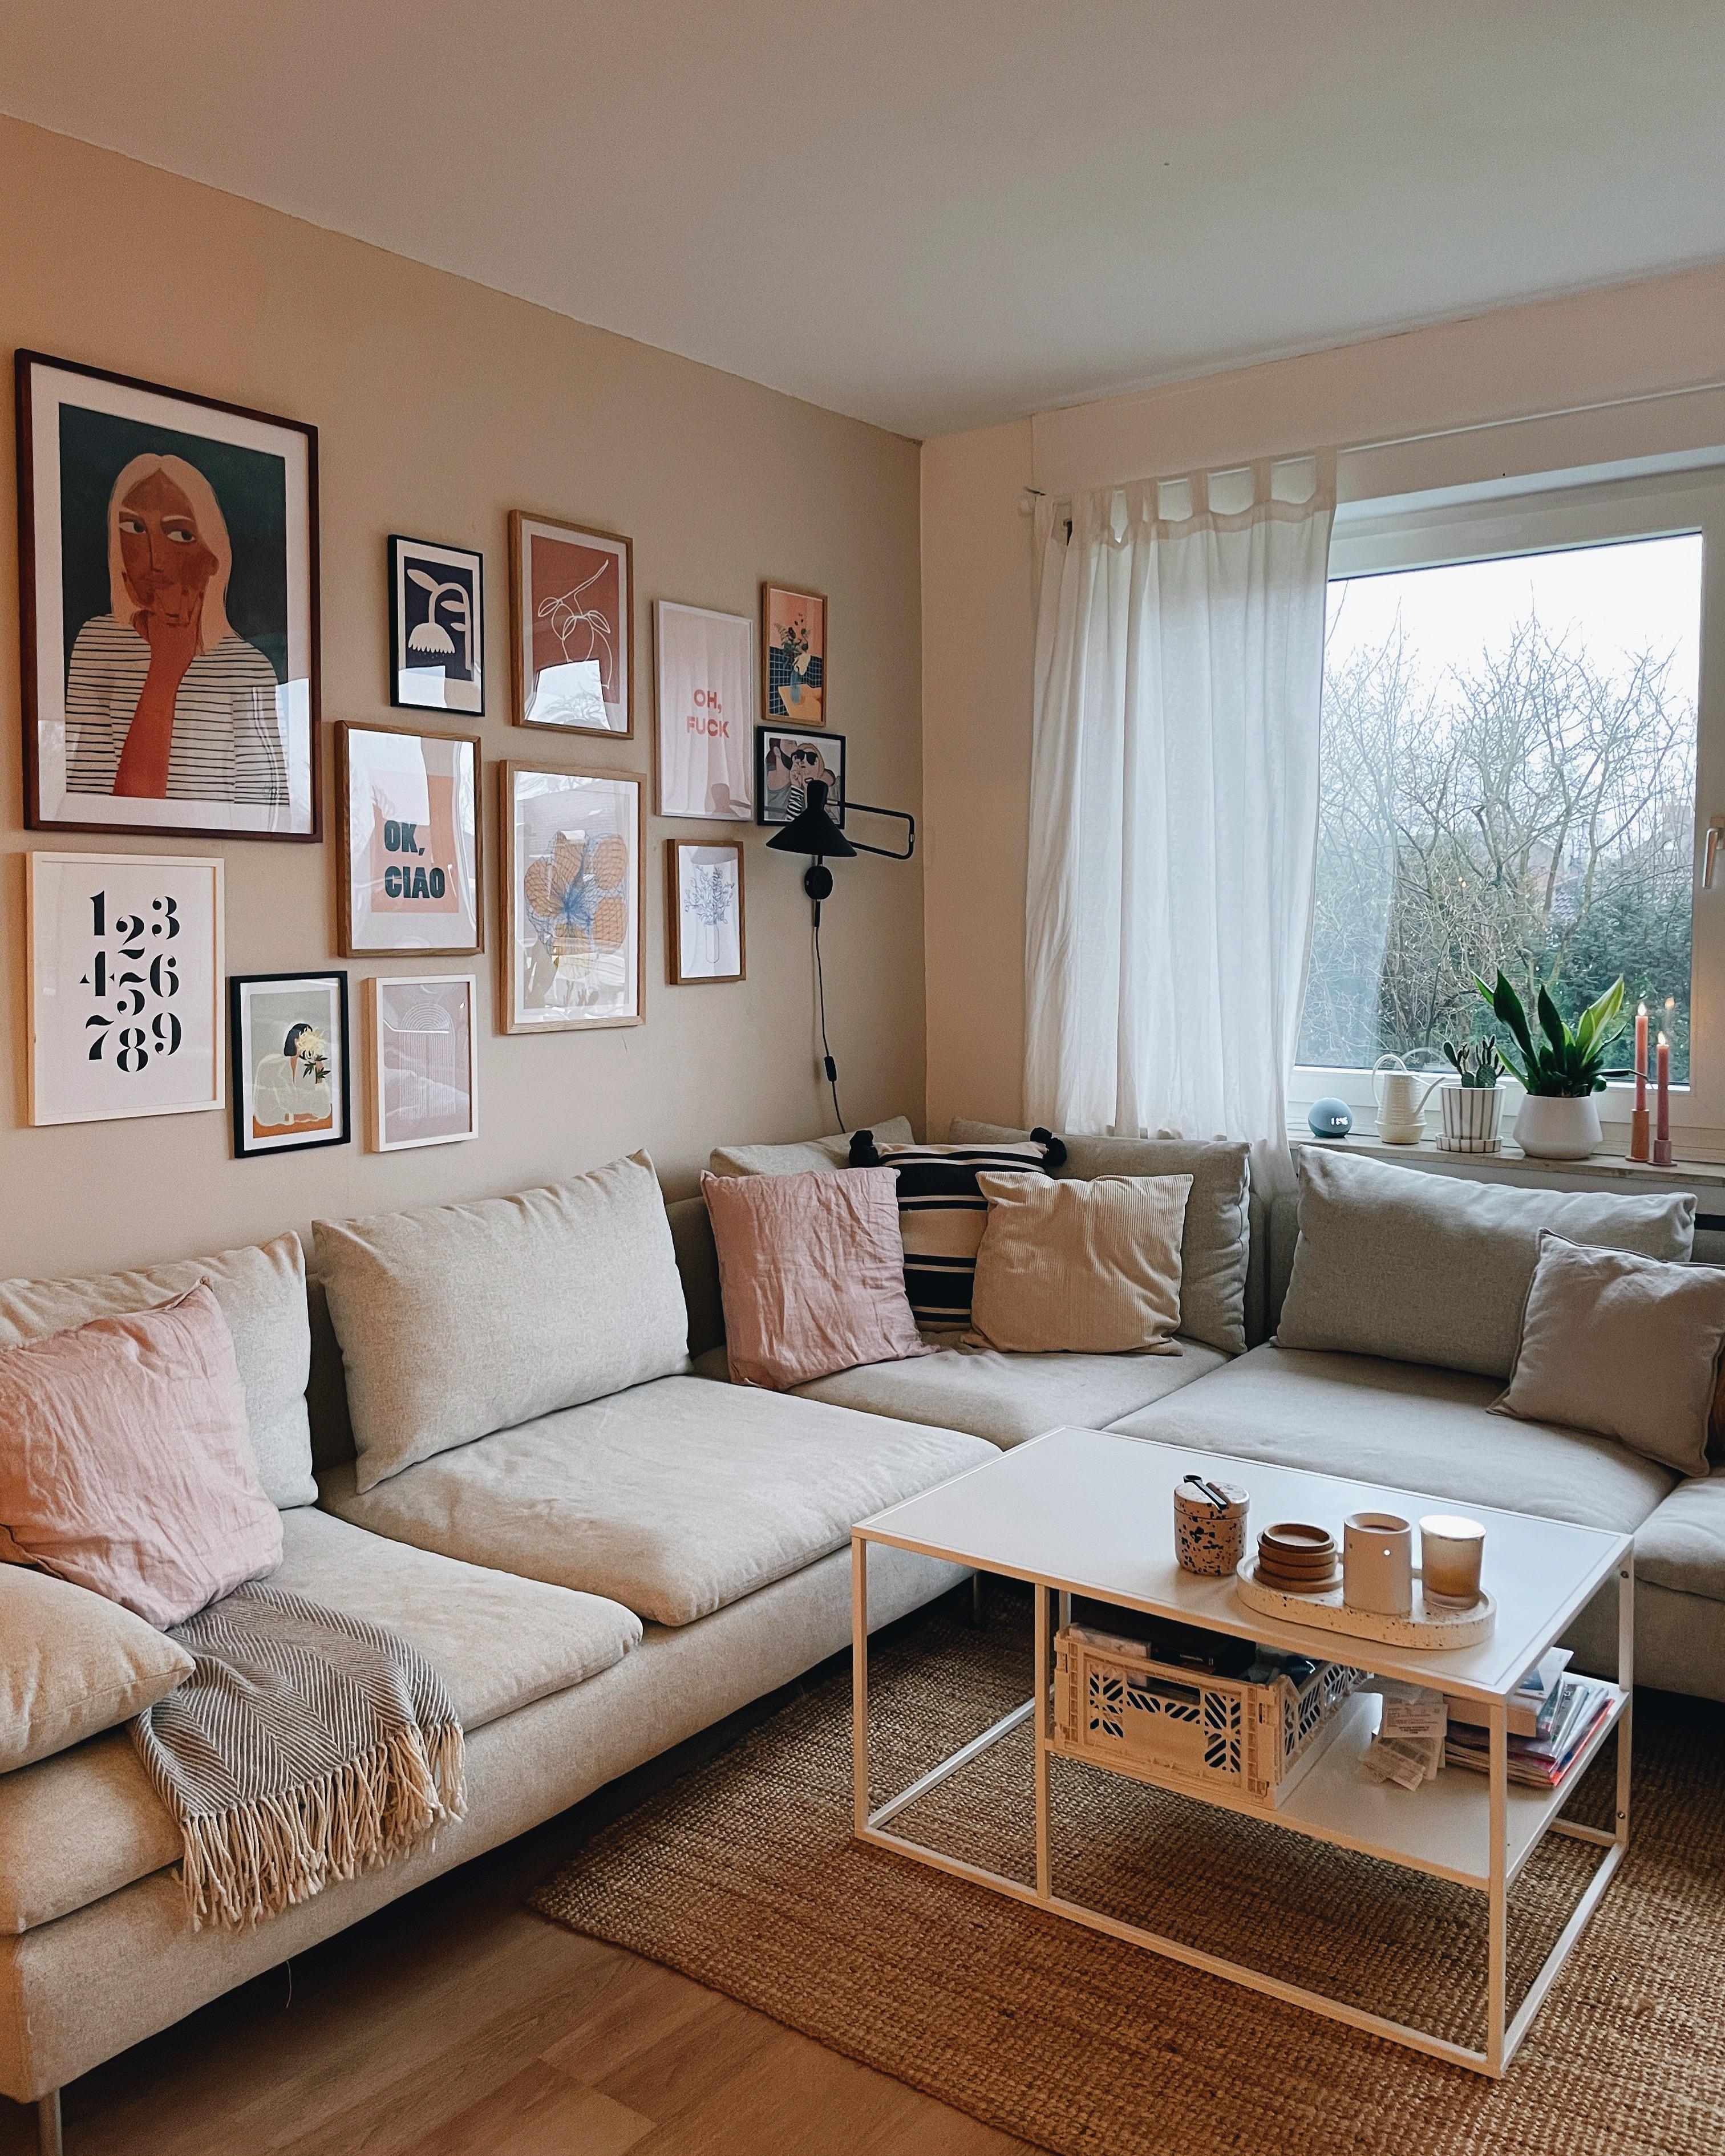 Cozy 🛋️ #wohnzimmer #couch #couchliebt #lieblingszimmer #cozy #gallerywall #interior